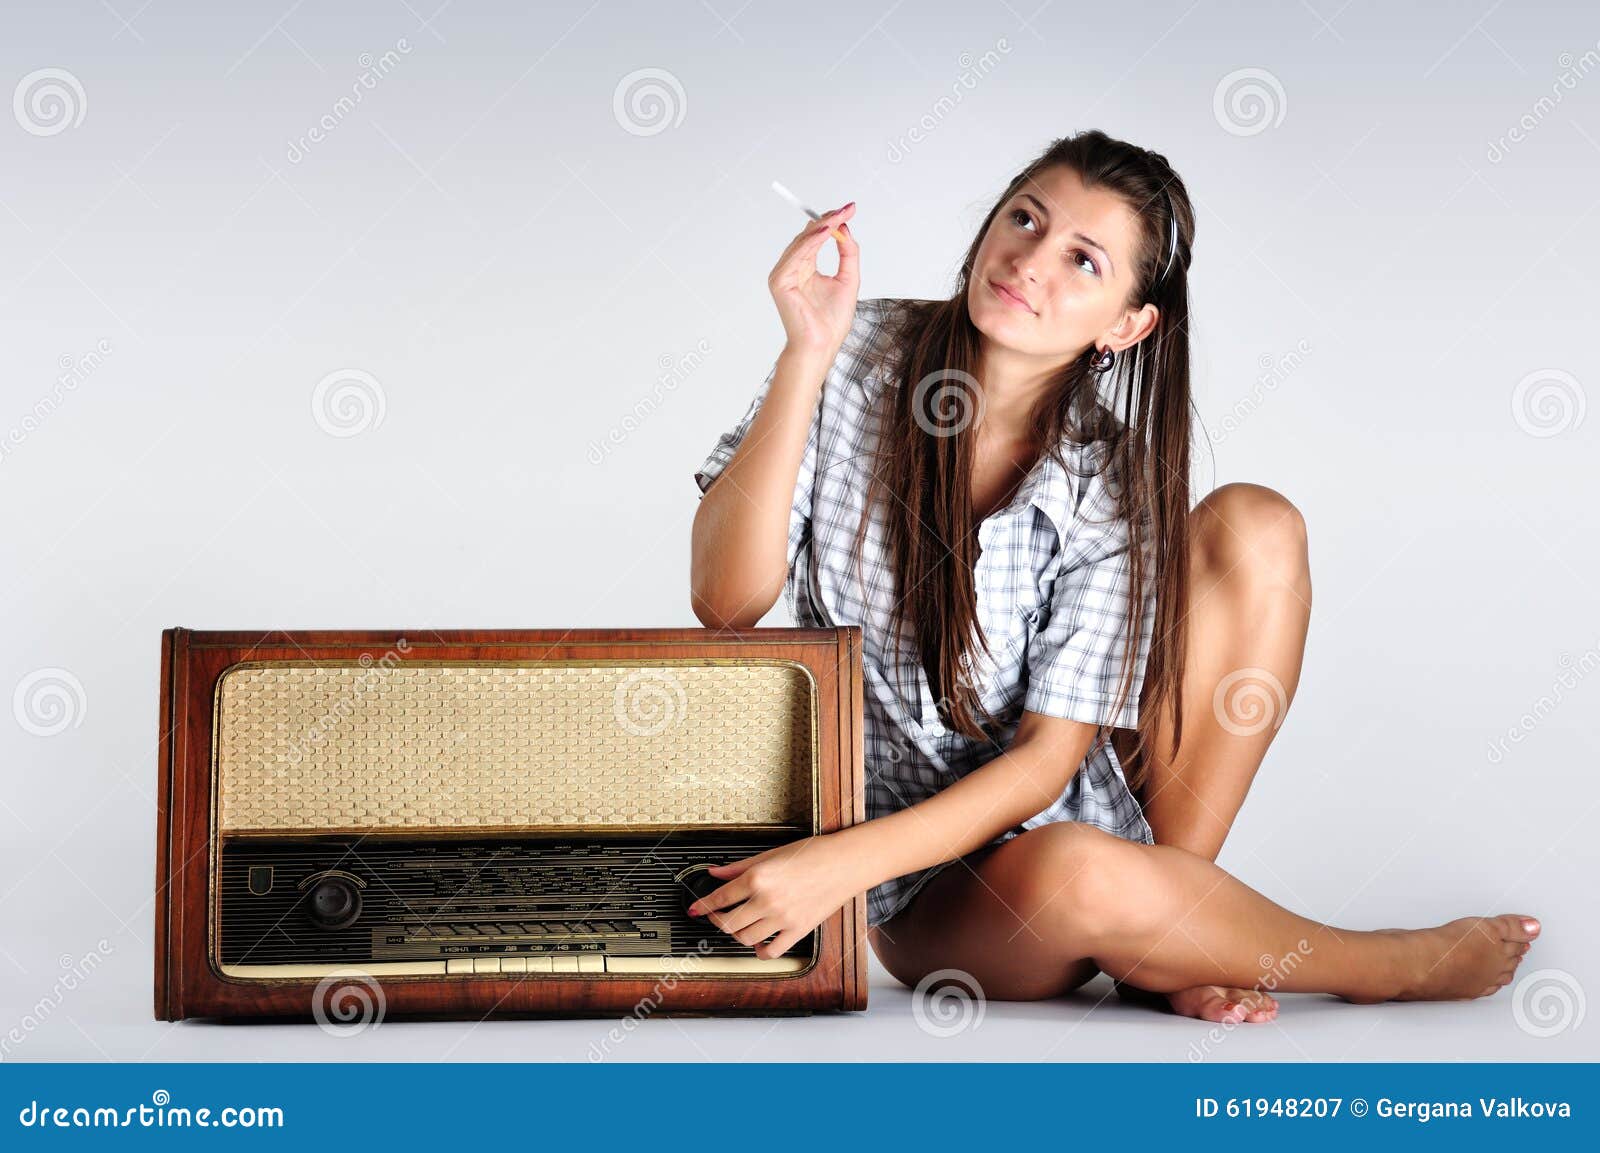 Слушать девочка милашка а в руках. Девушка с радиоприемником. Девка с радиоприёмником. Девушка слушает радиоприемник. Человек с радиоприемником.